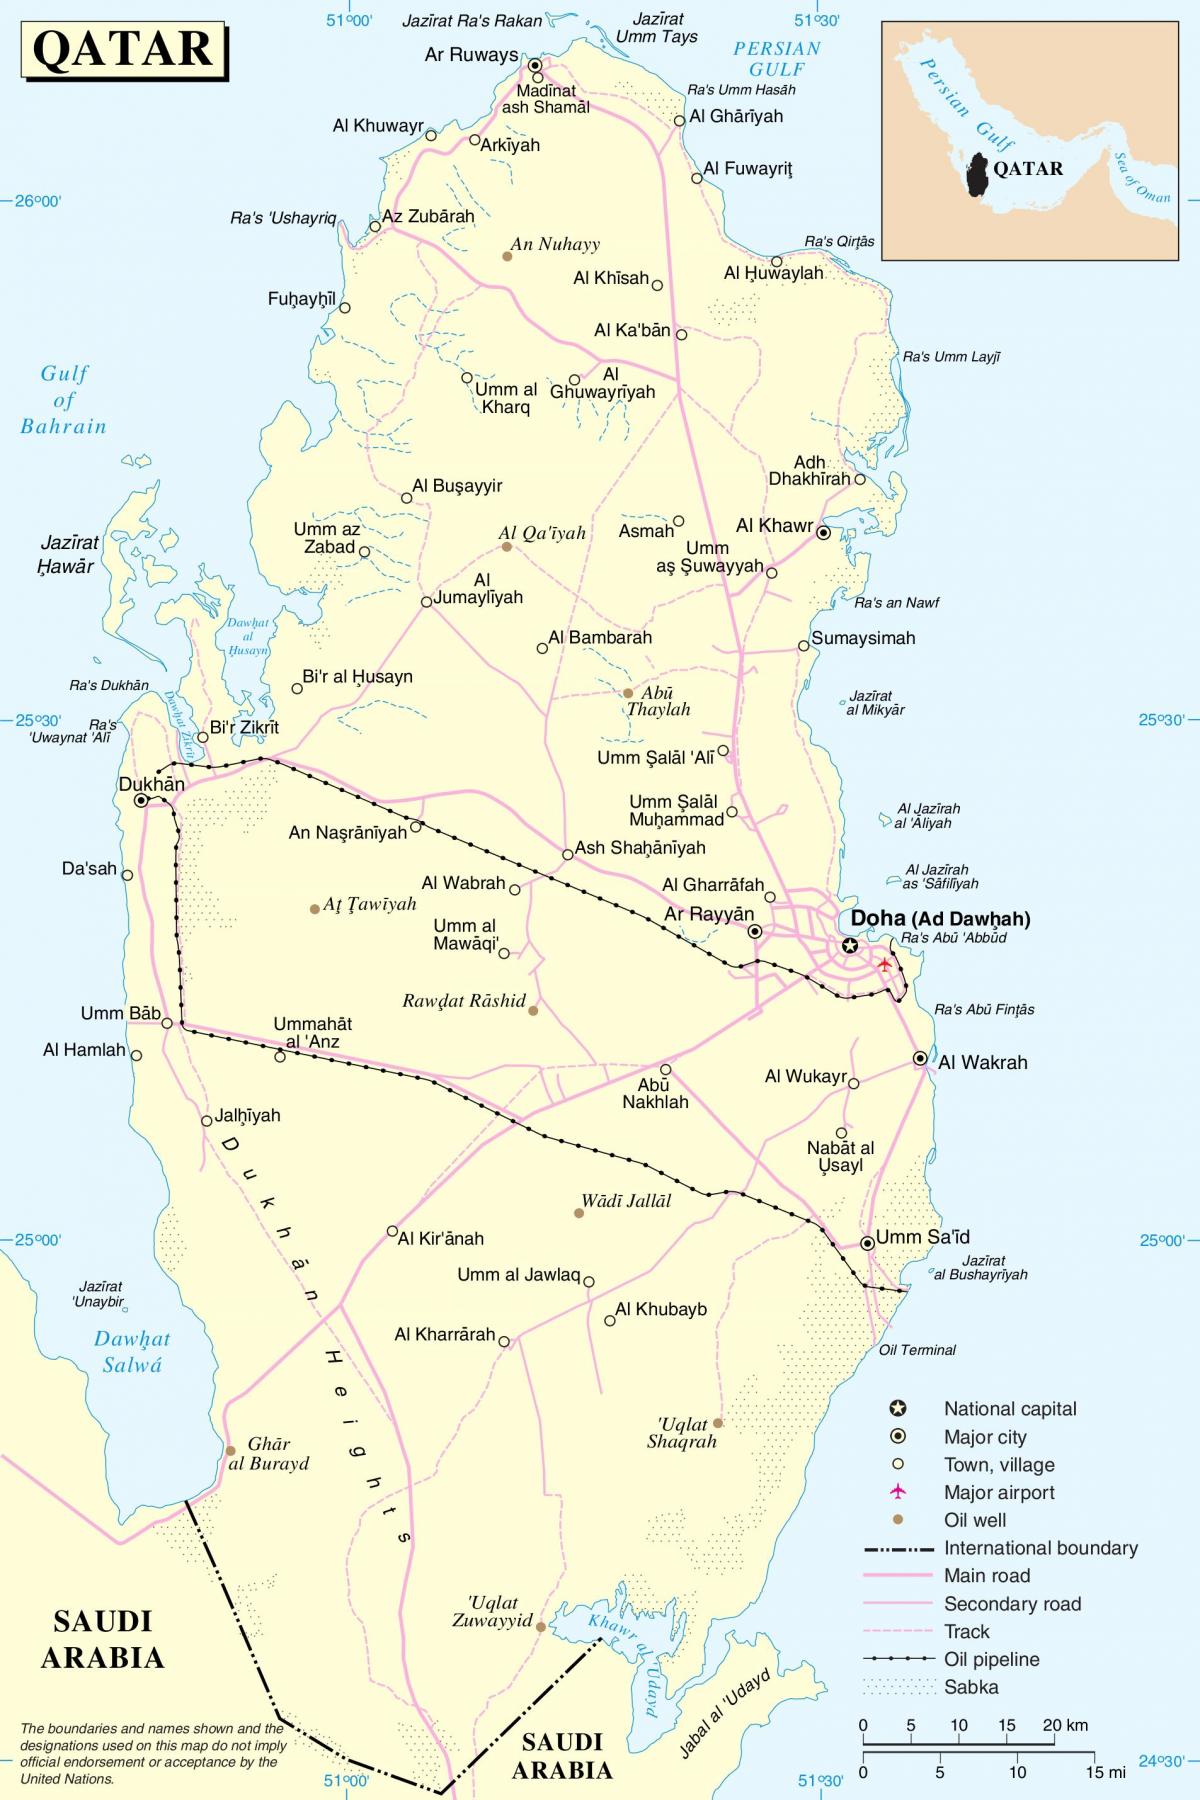 Катар дарожнага маршрут на карце